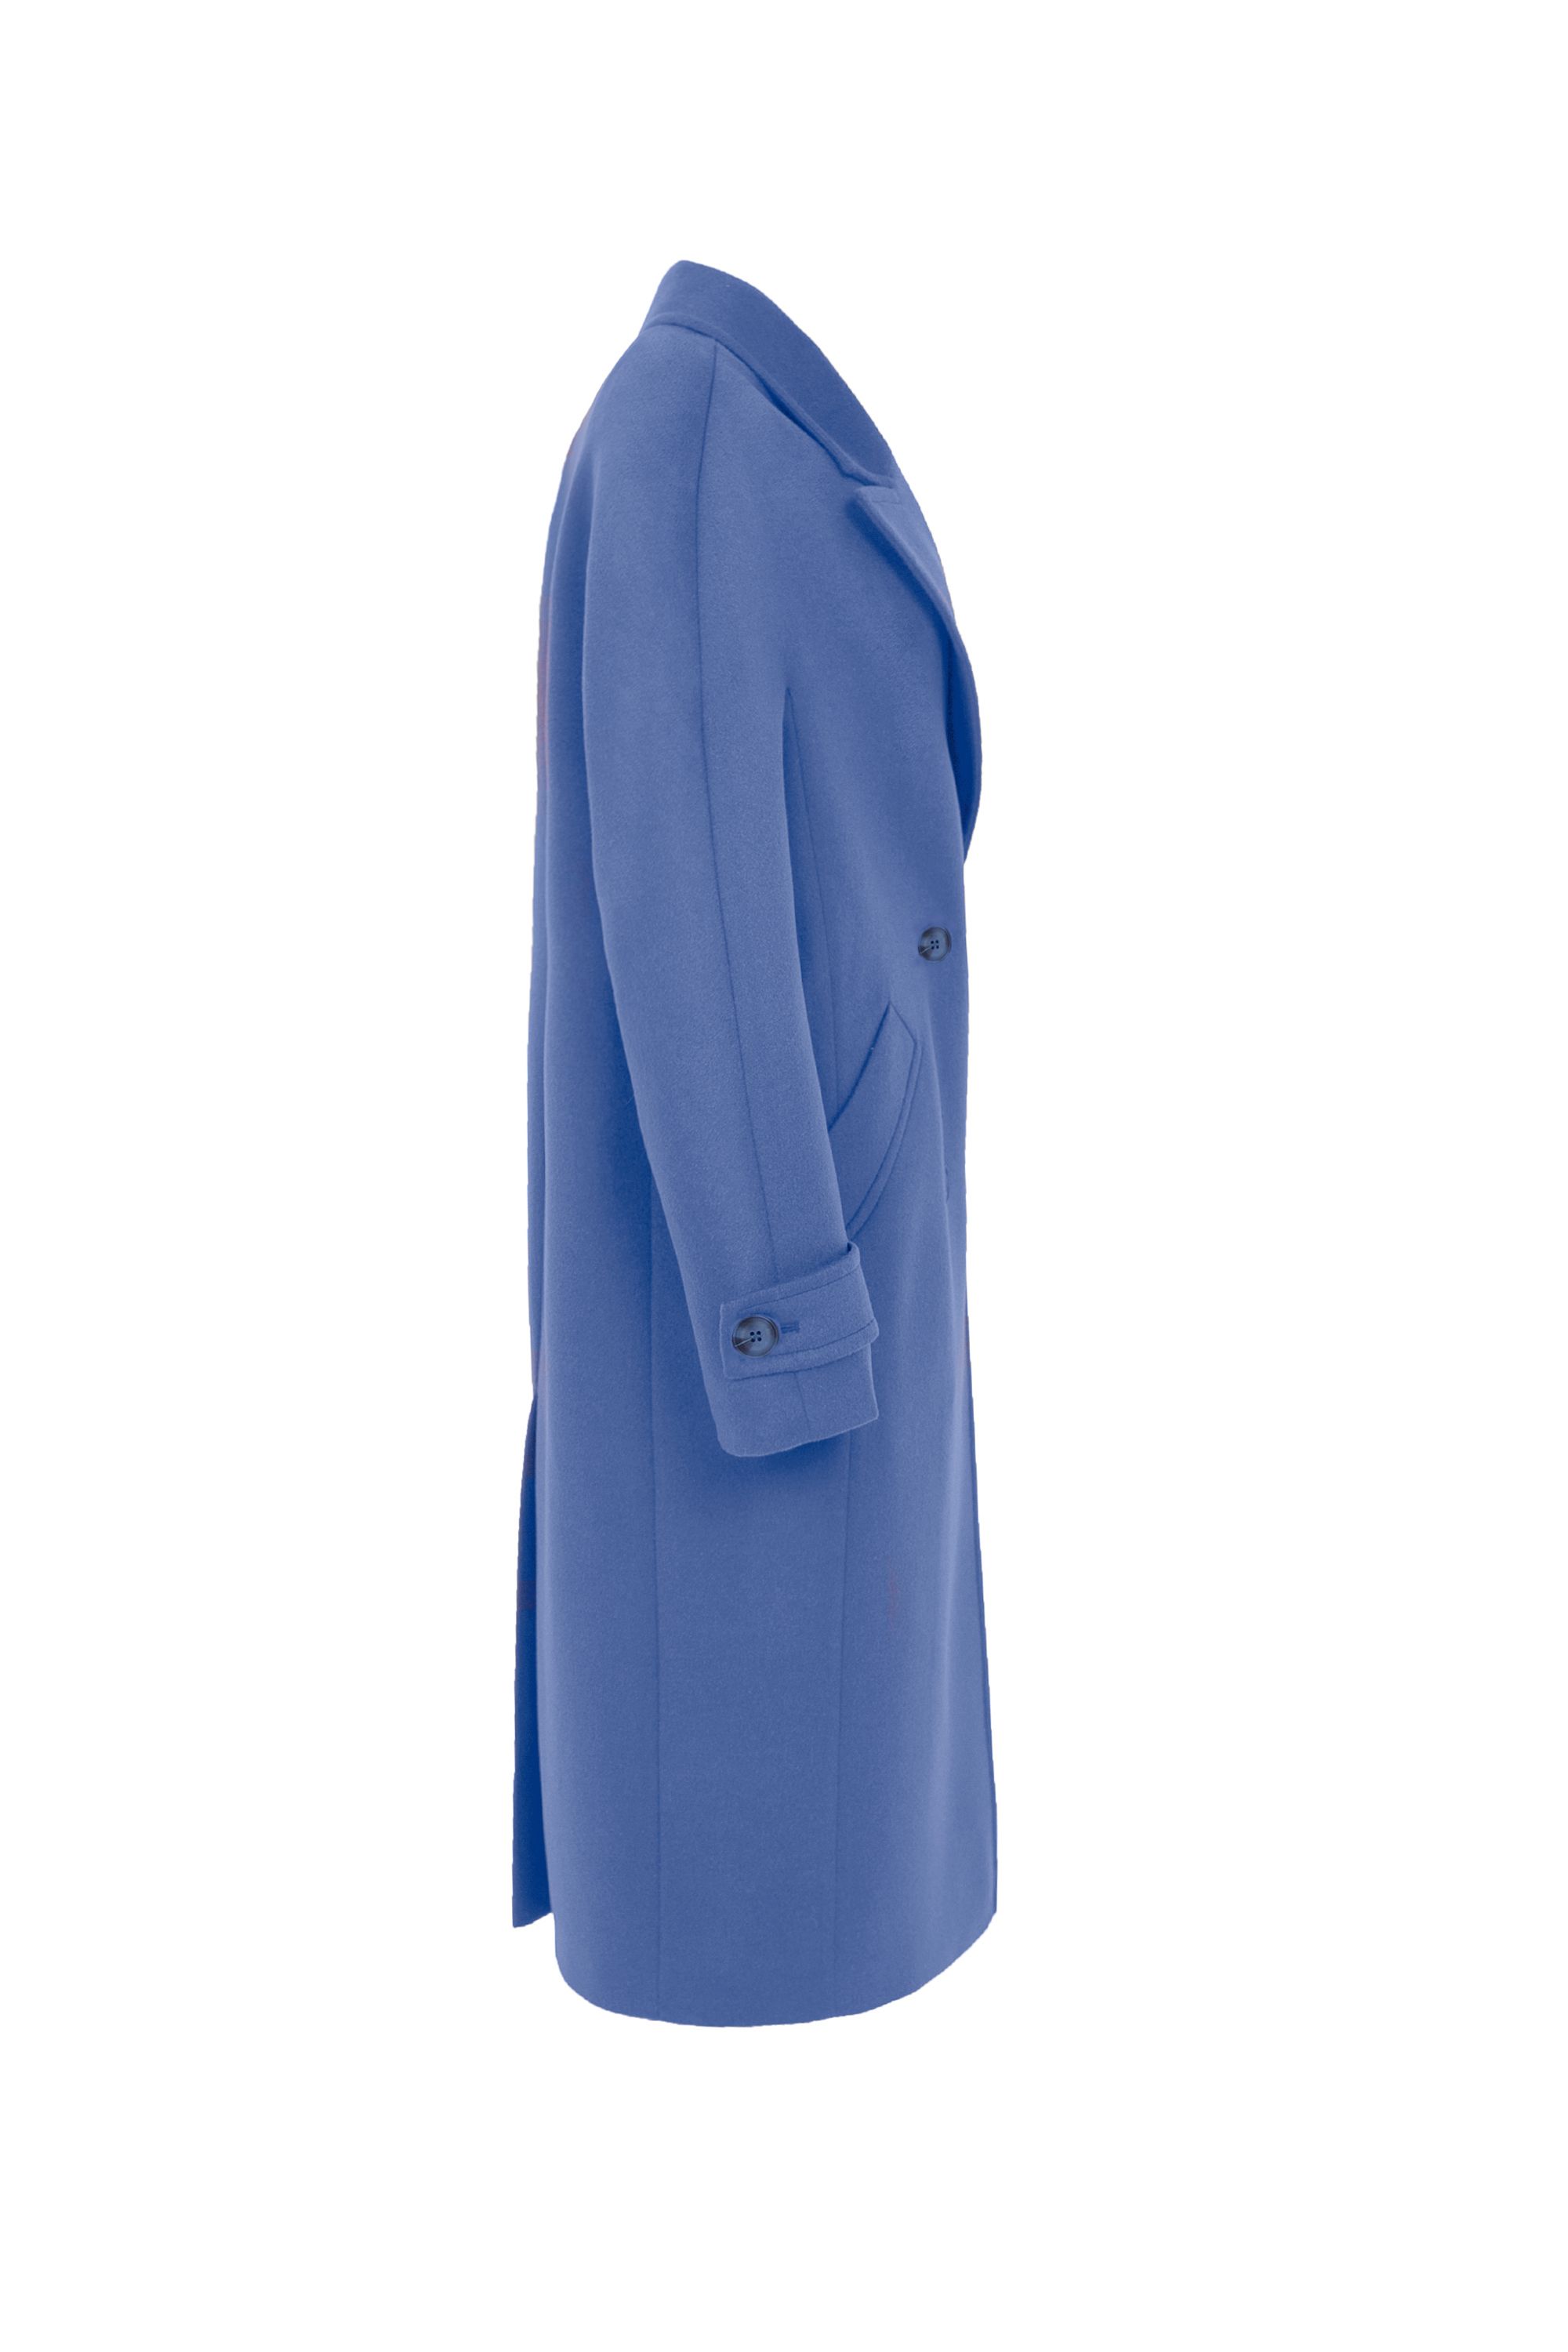 Пальто женское демисезонное 1-12698-1. Фото 2.